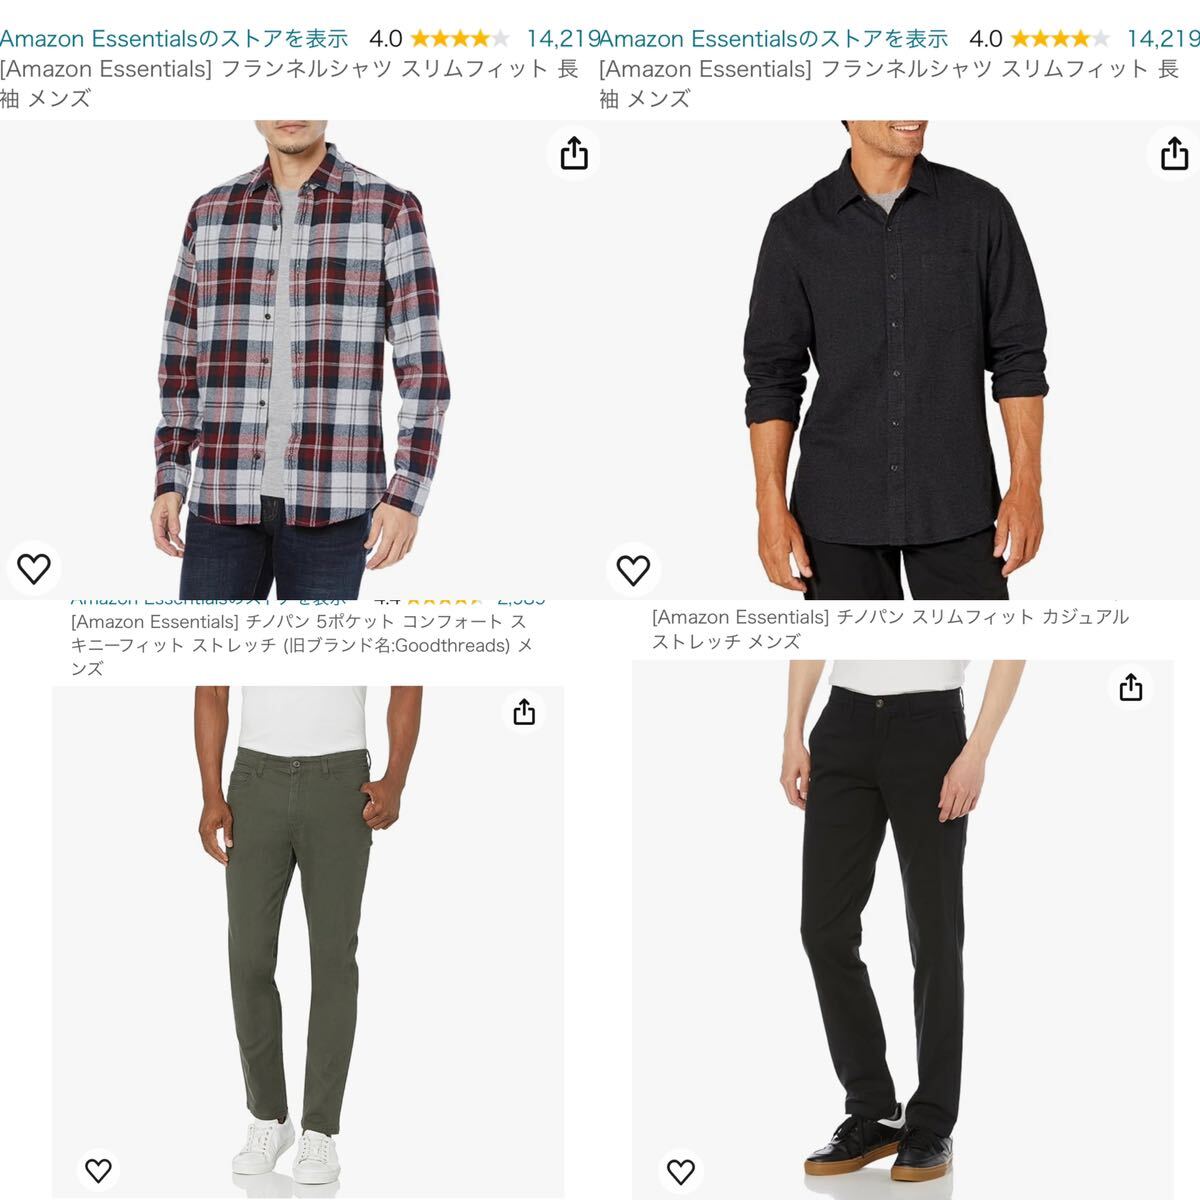 【新品】洋服 まとめ売り Amazon essentials レディース ワンピース メンズ シャツ Tシャツ ボトムス 31枚 セット 123の画像8